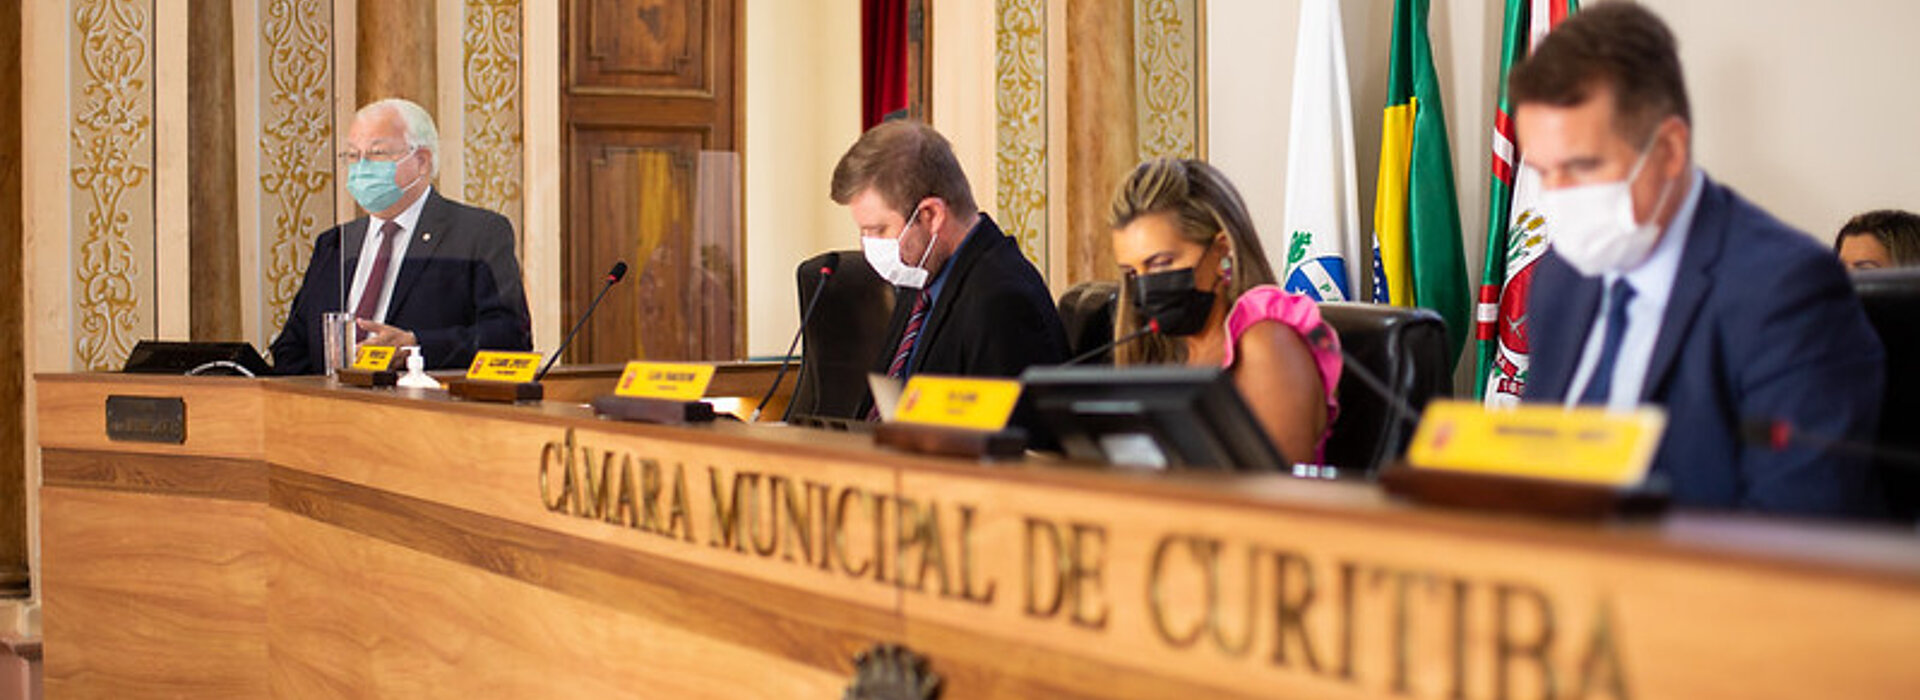 Tribuna Livre recebe diretor geral do Hospital Evangélico Mackenzie —  Portal da Câmara Municipal de Curitiba